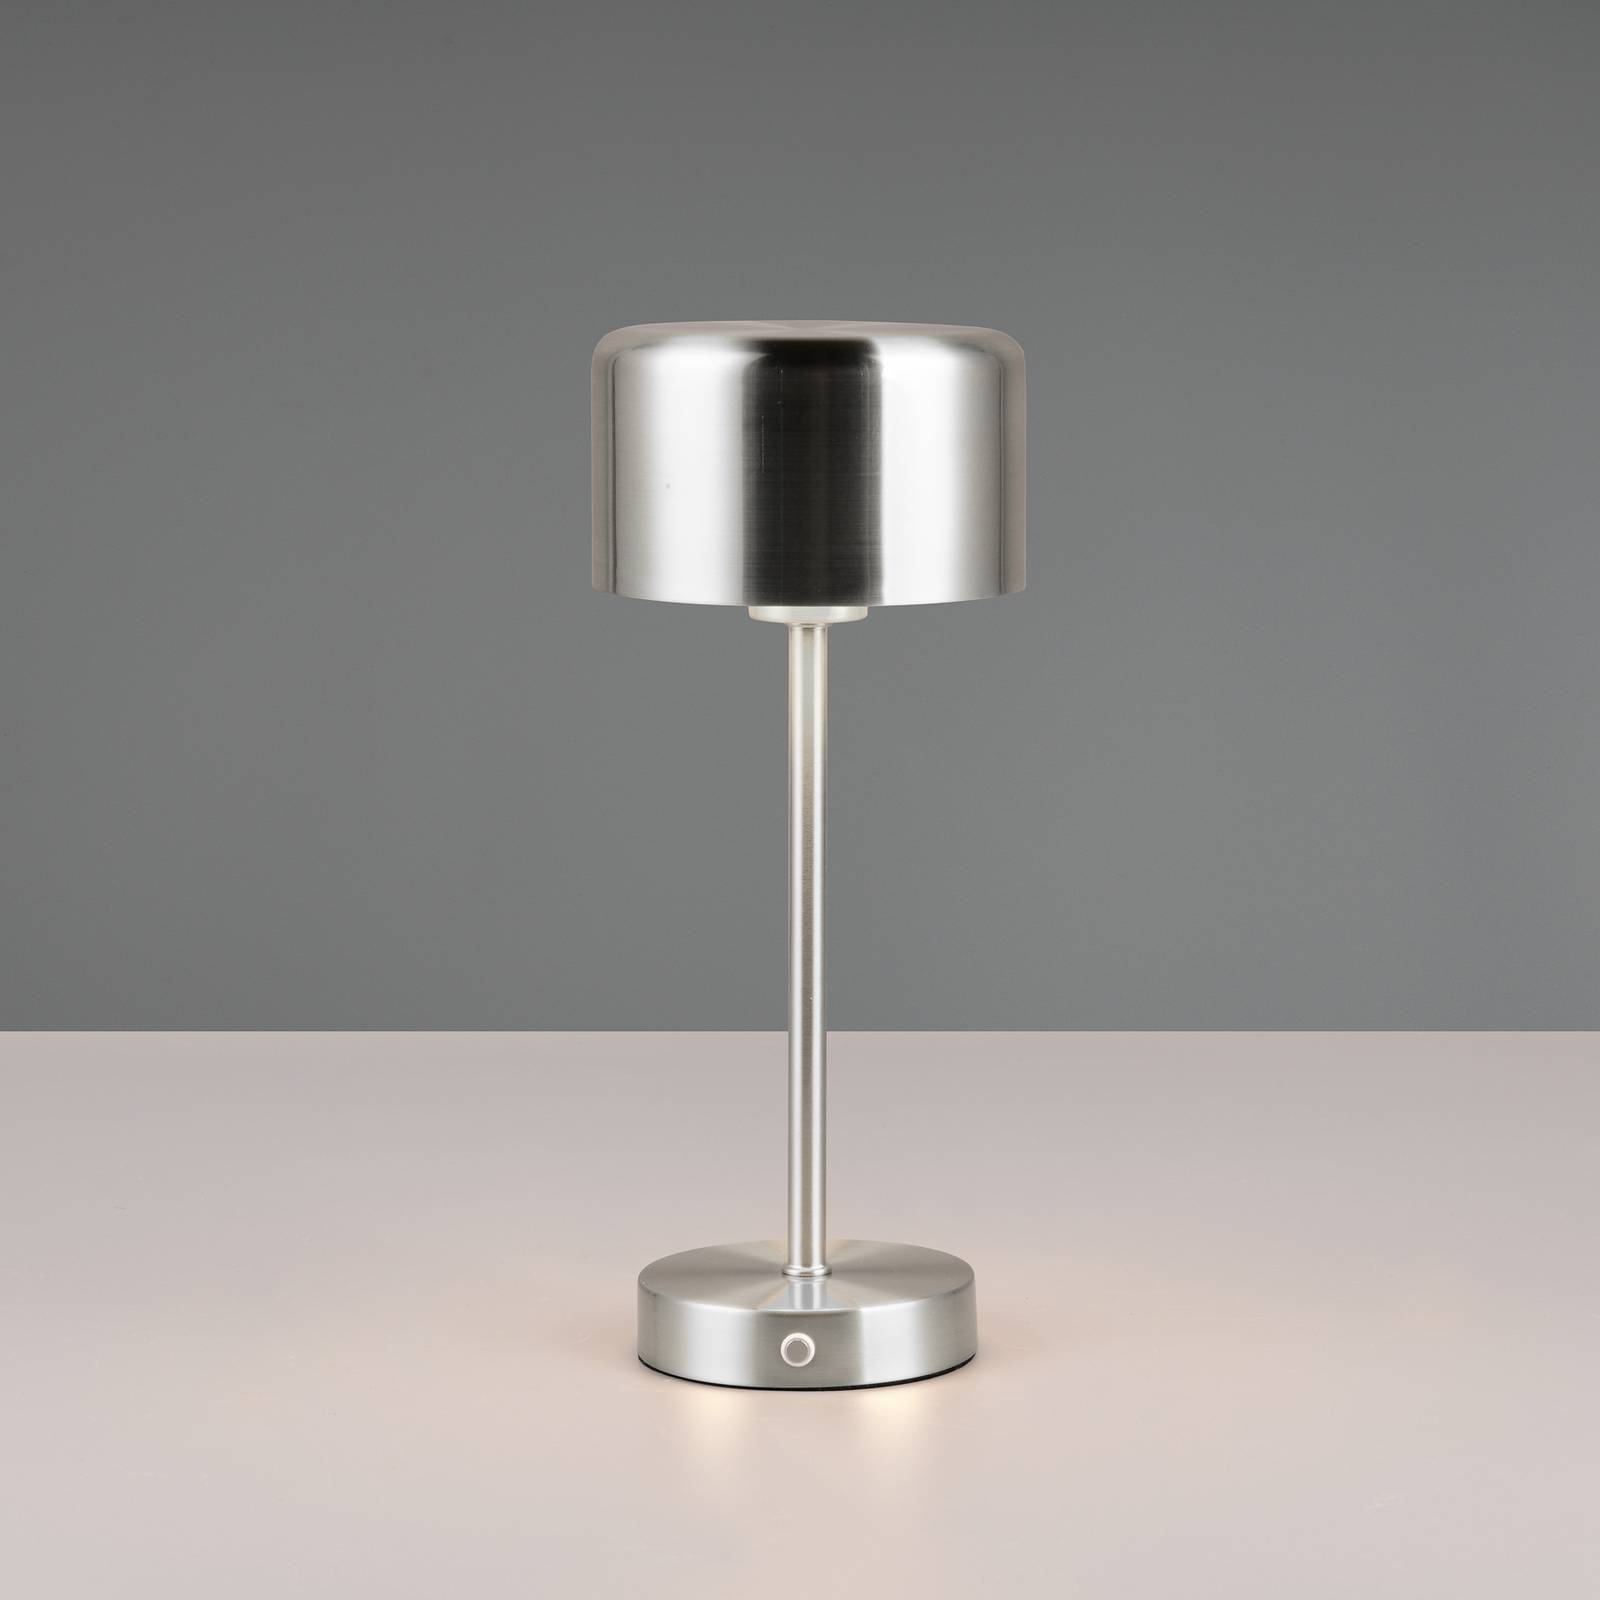 Jeff LED-es újratölthető asztali lámpa, nikkel színű, magasság 30 cm, fém